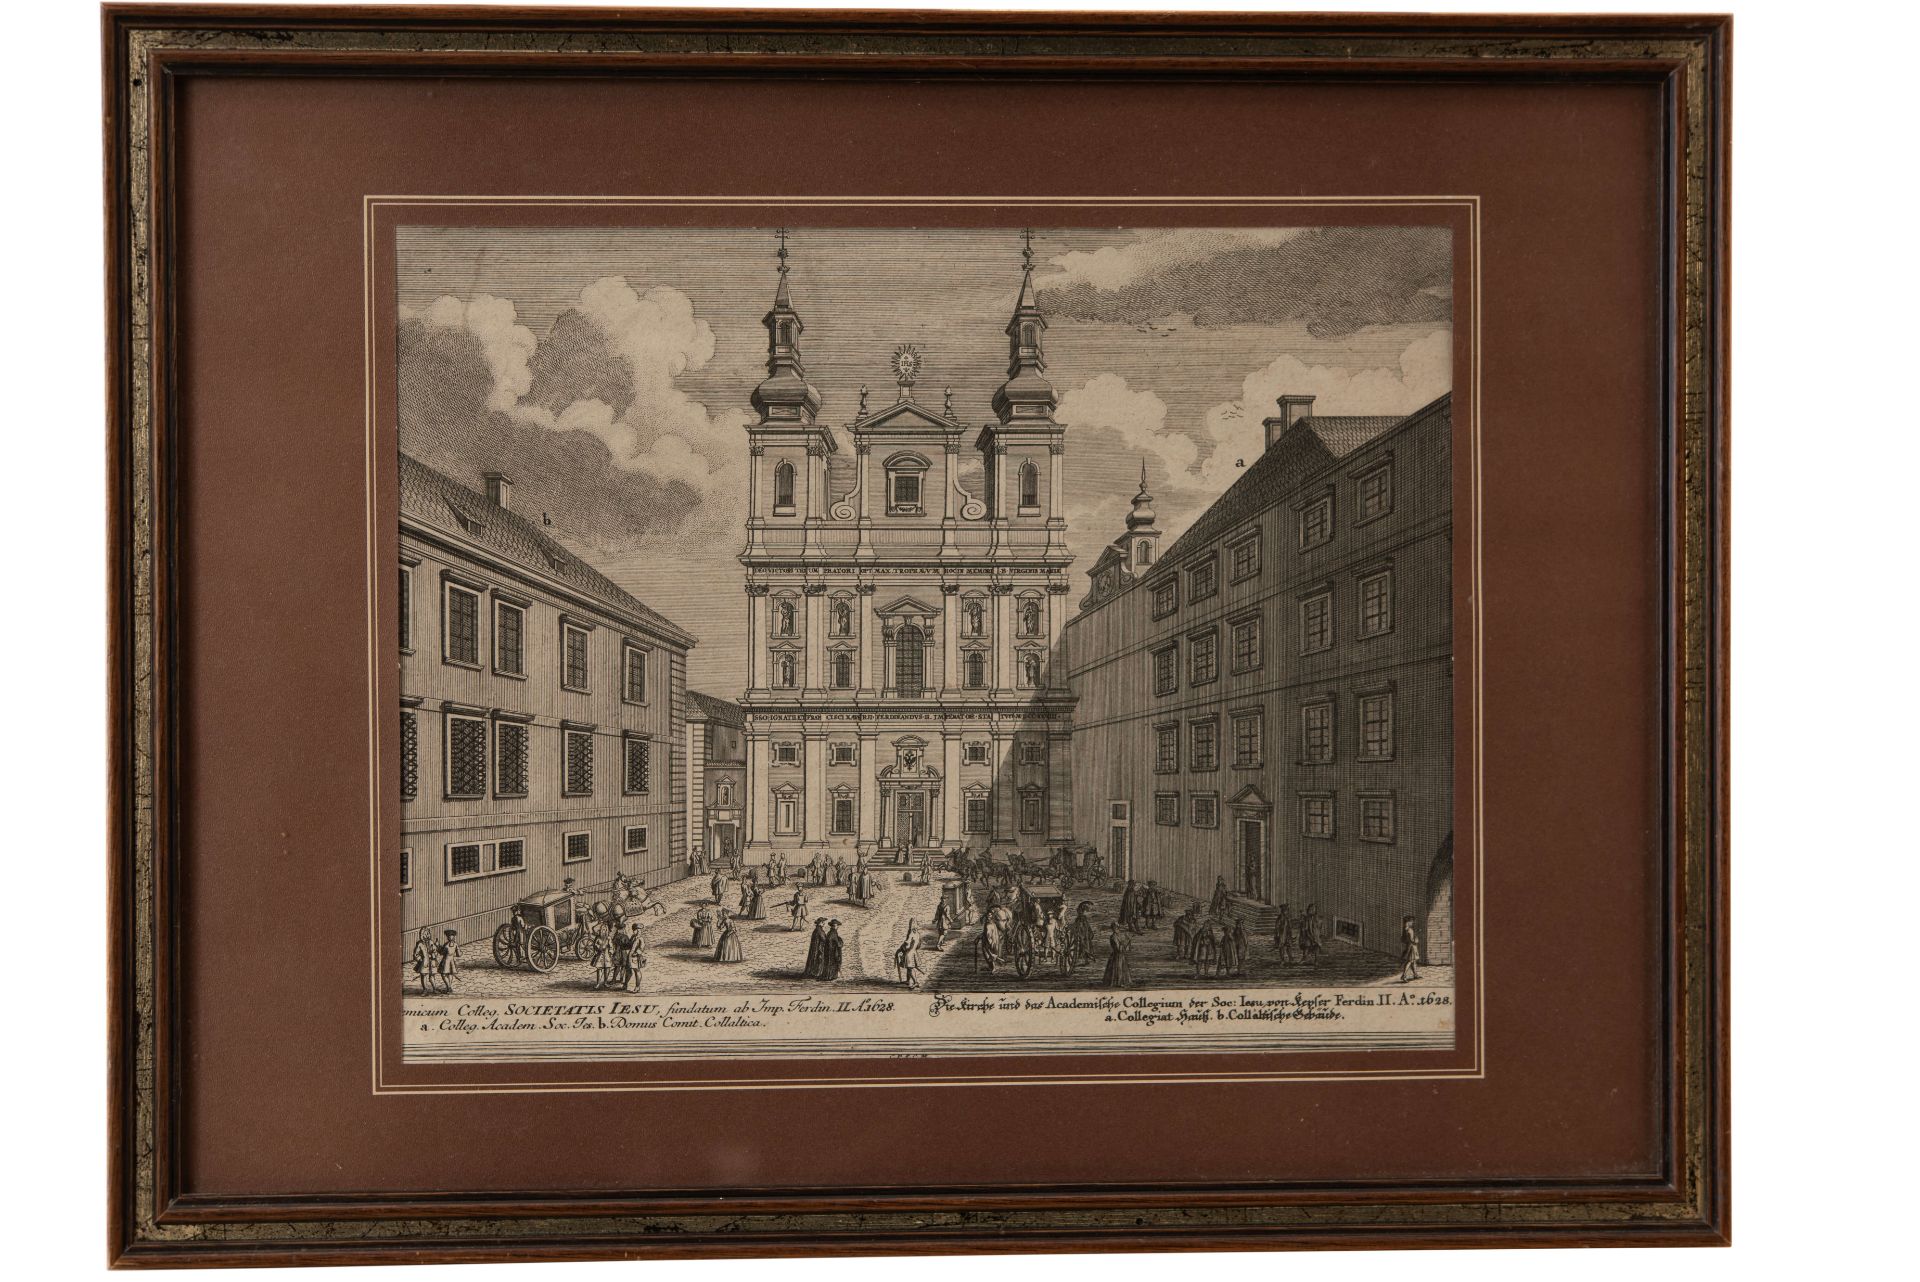 Jesuitenkirche und Akademisches Kolleg ("Collegium Academicum Viennense Societatis Jesu") | Picture